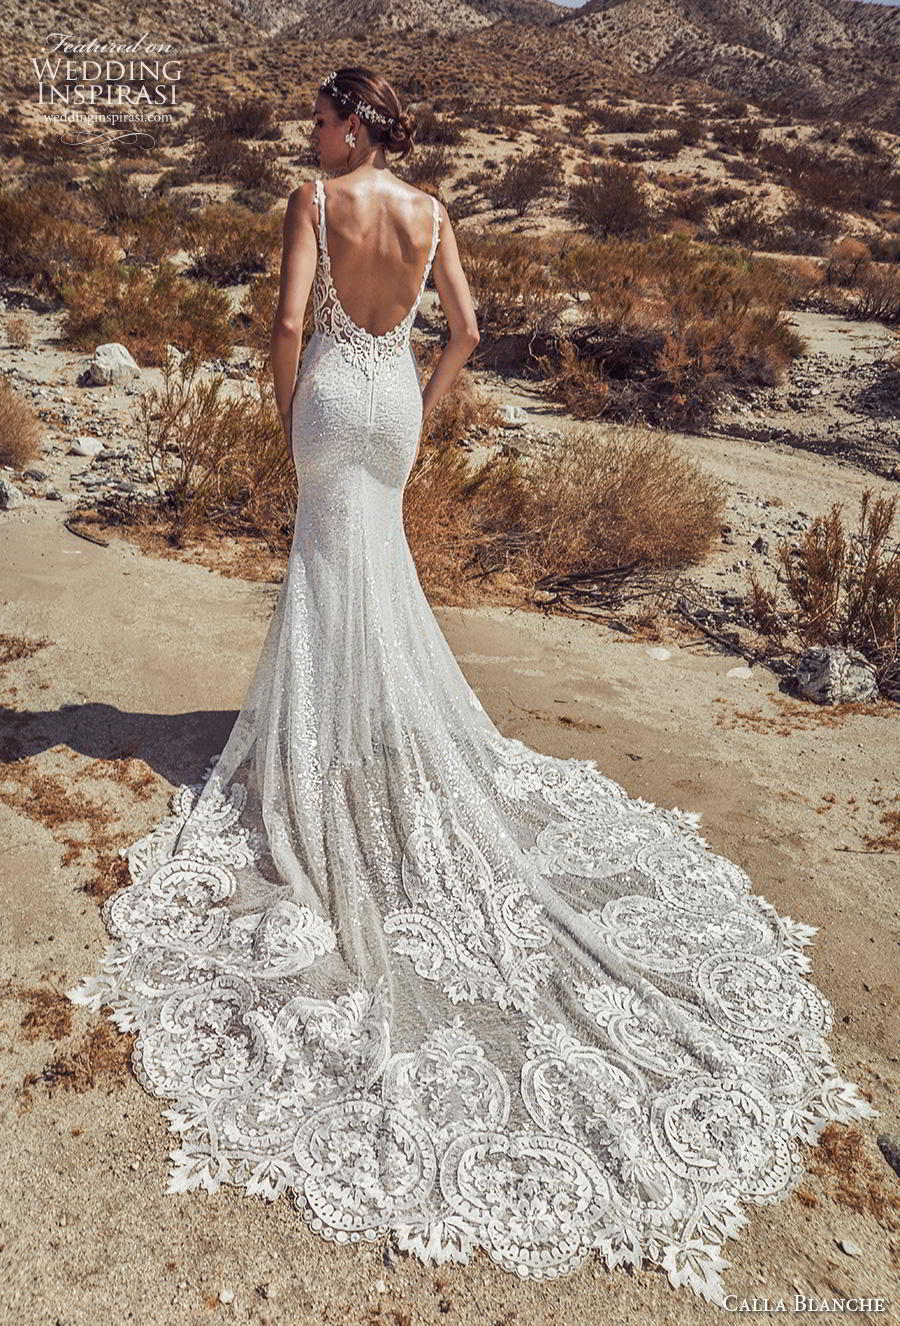 Calla Blanche Spring 2019 Wedding Dresses | Wedding Inspirasi